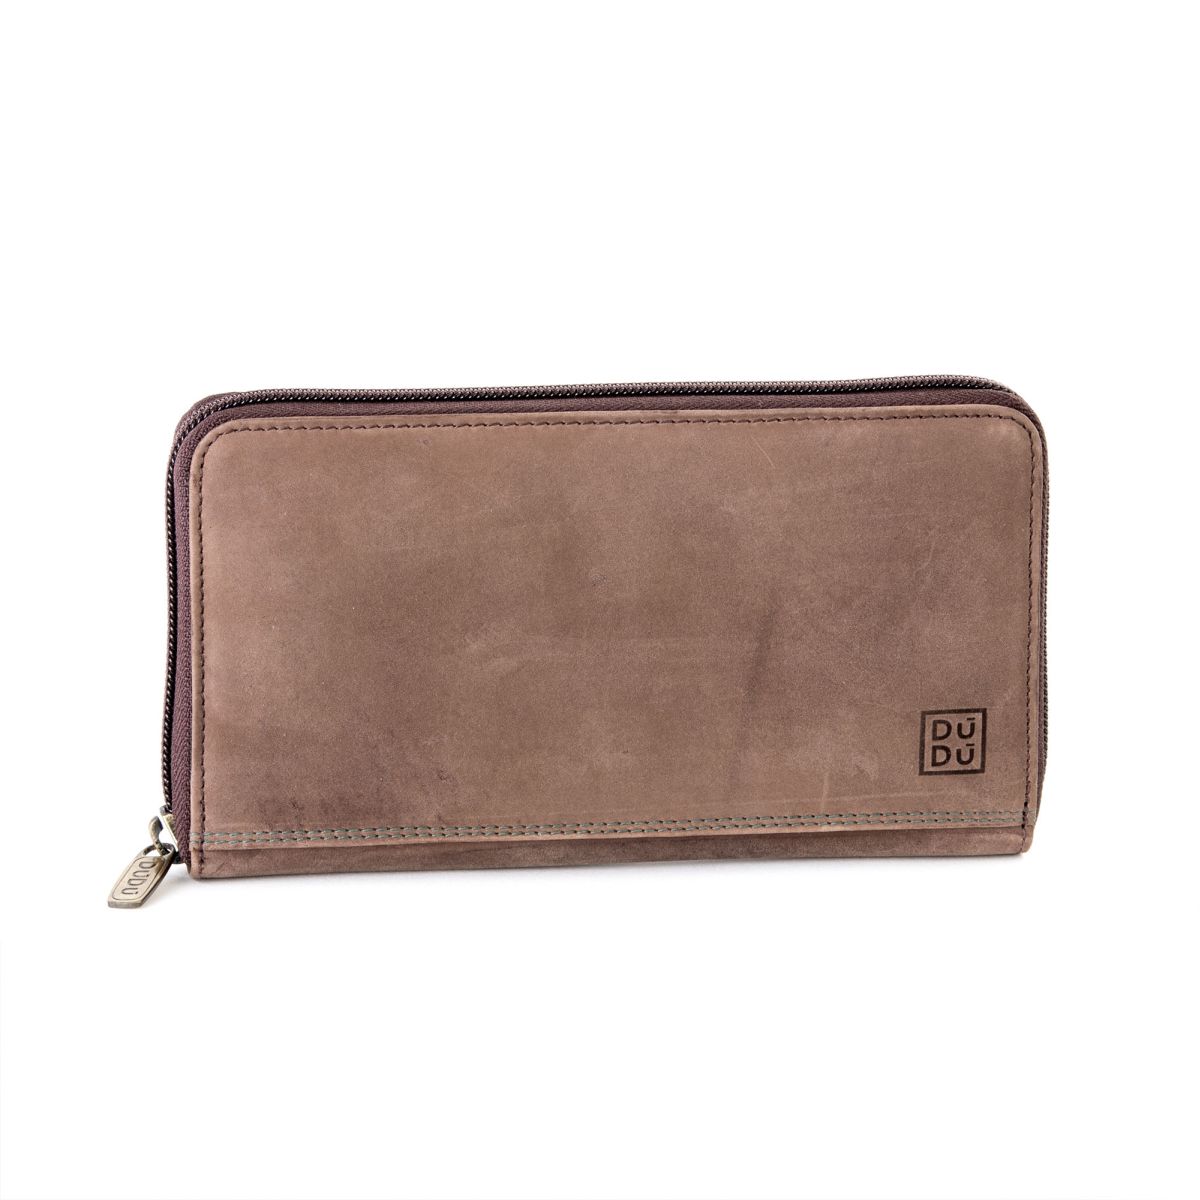 DuDu Ladies Leather Zip Vintage Wallet - Dark Brown